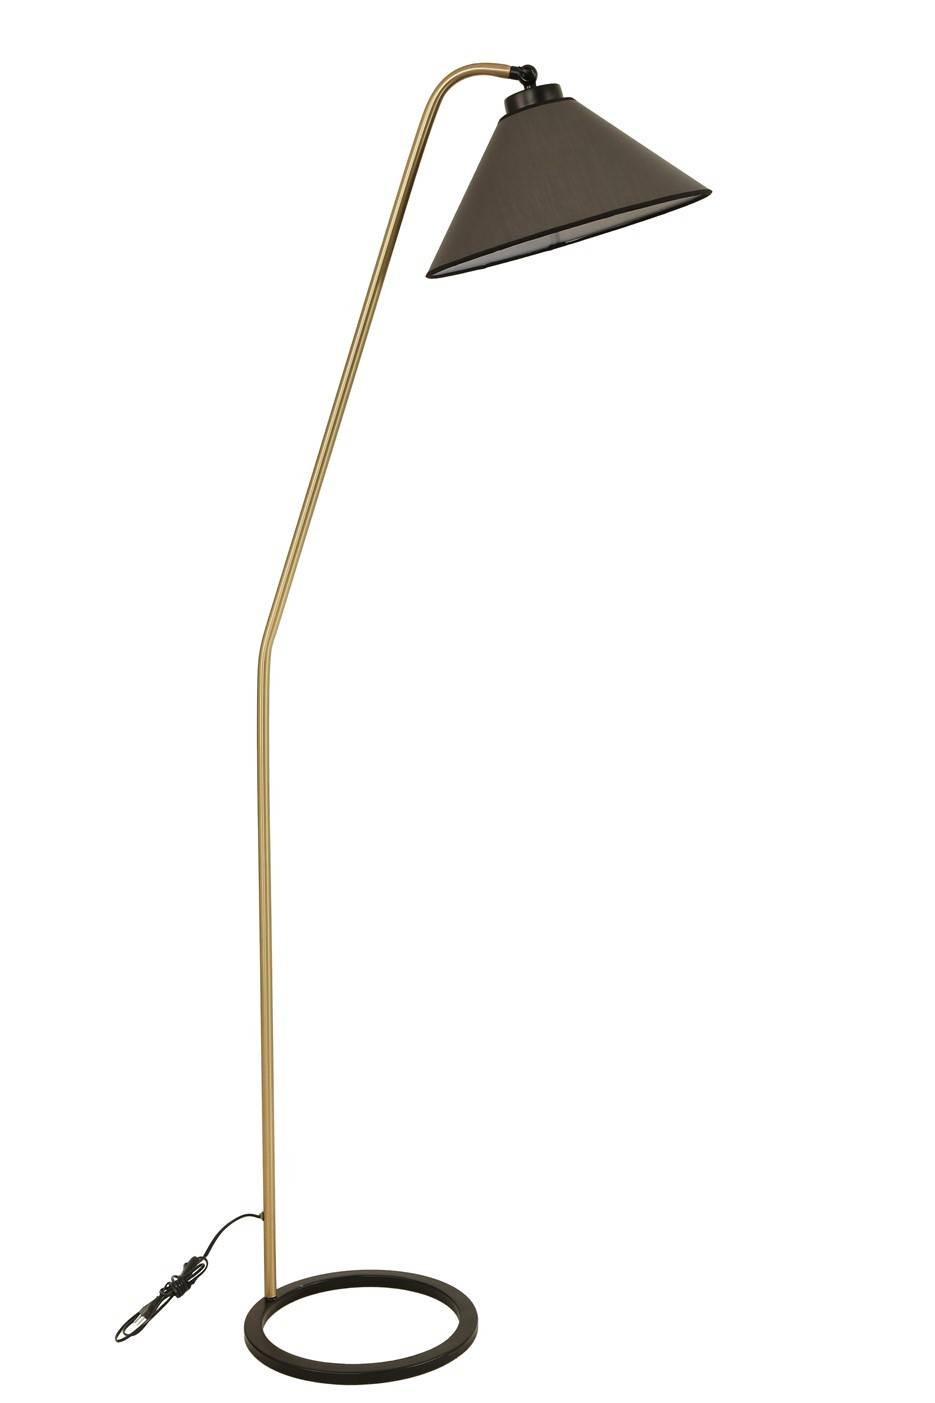 Kojex afgeknotte kegel vloerlamp H155cm Antraciet en goud metaal